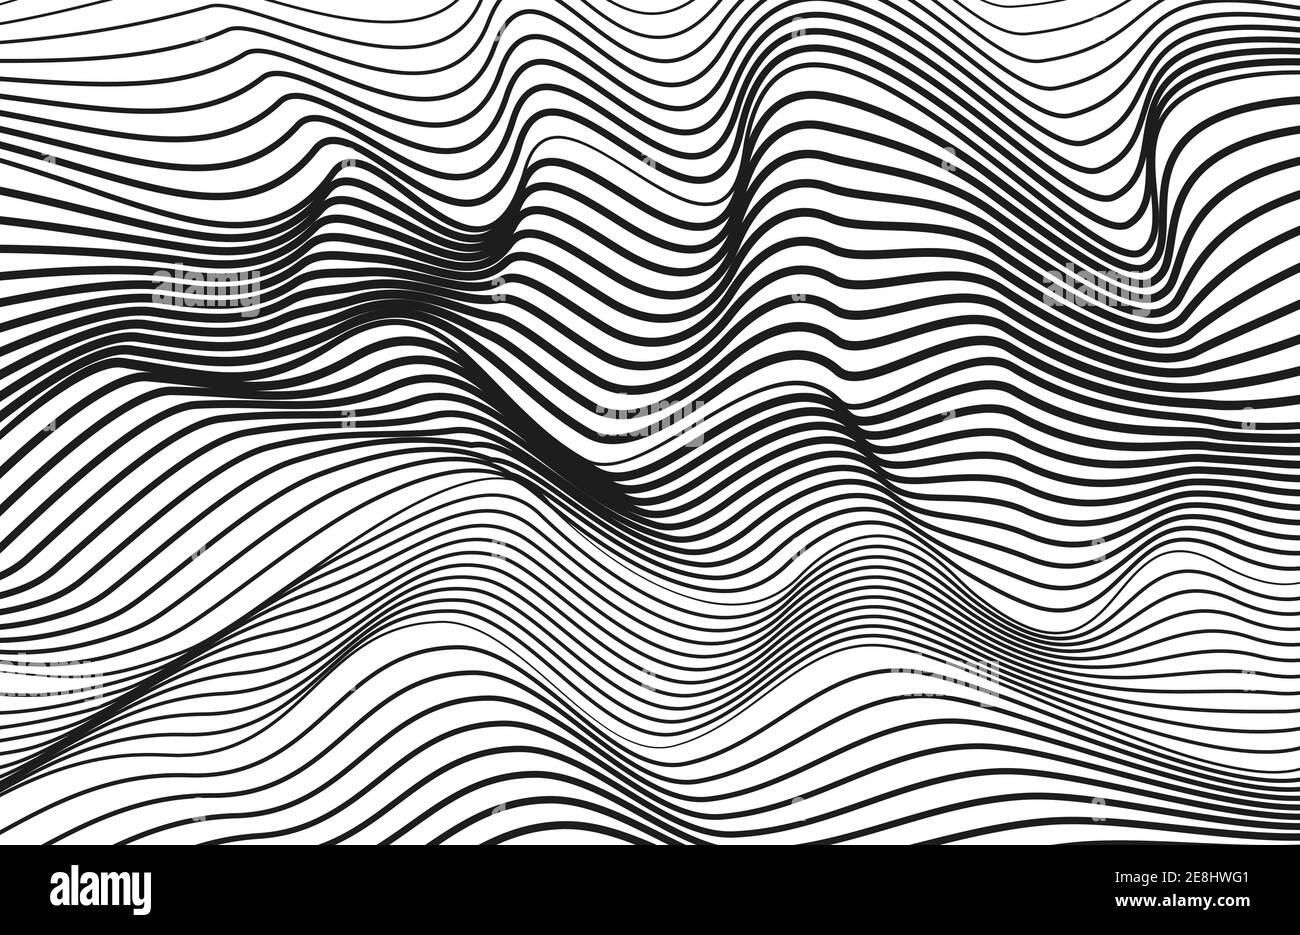 Motif technique art op. Ondes abstraites en noir et blanc. Design créatif, lignes fluides. Courbes minces de squiggle vectoriel. Arrière-plan rayé monochrome. EPS10 Illustration de Vecteur